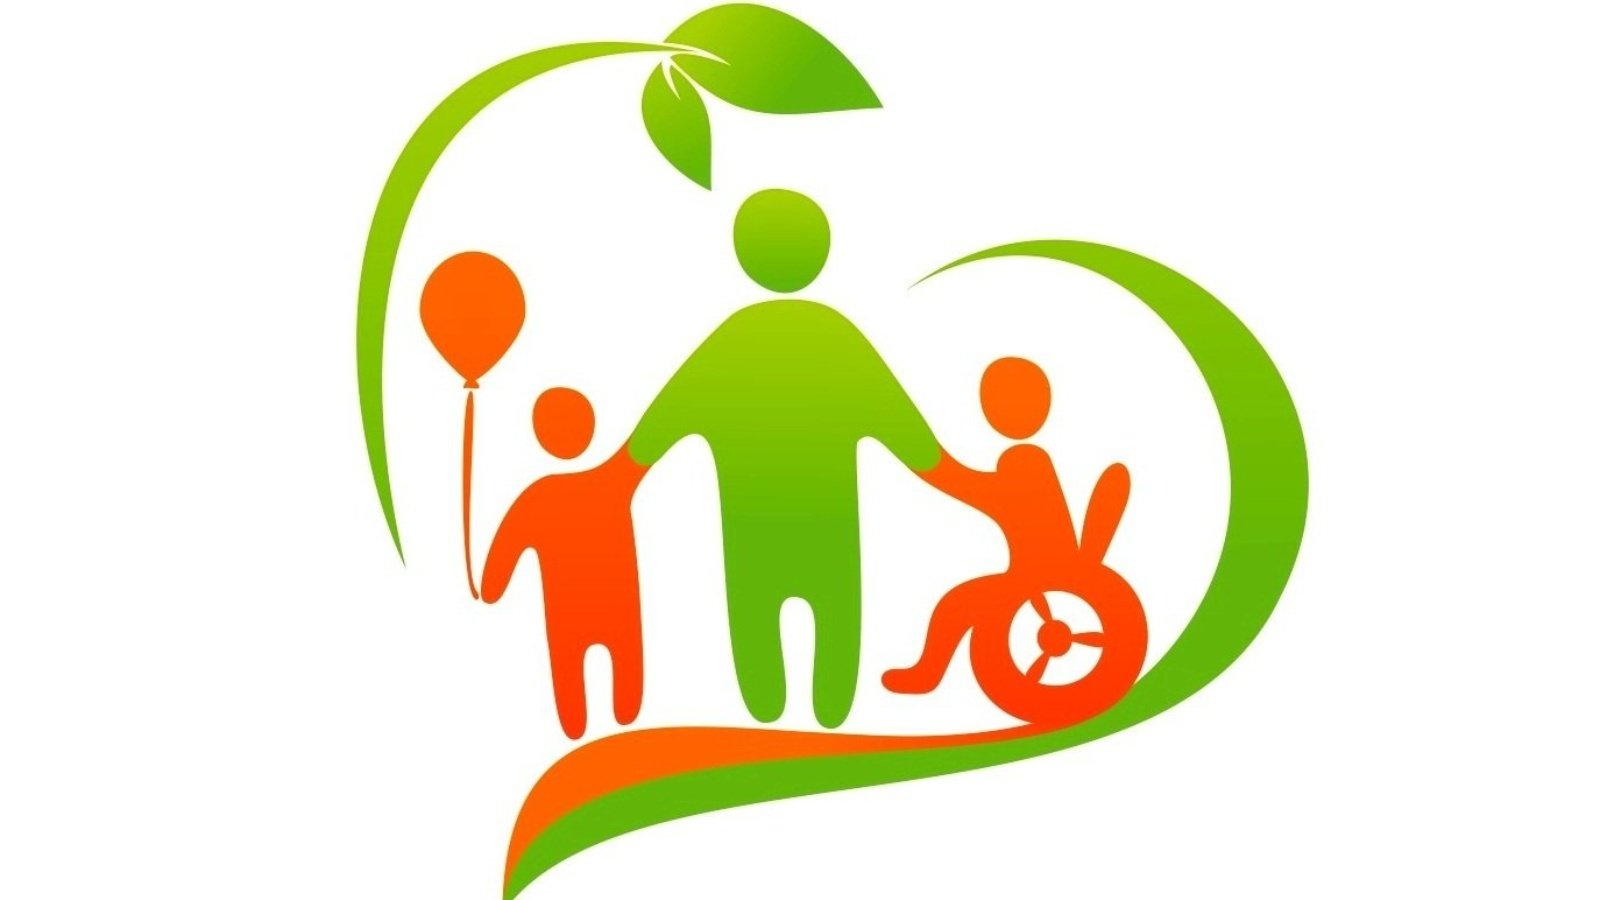 Социально активная семья. Эмблема детей инвалидов. Дети с ограниченными возможностями здоровья. День инвалида логотип. Семья и дети с ограниченными возможностями здоровья.